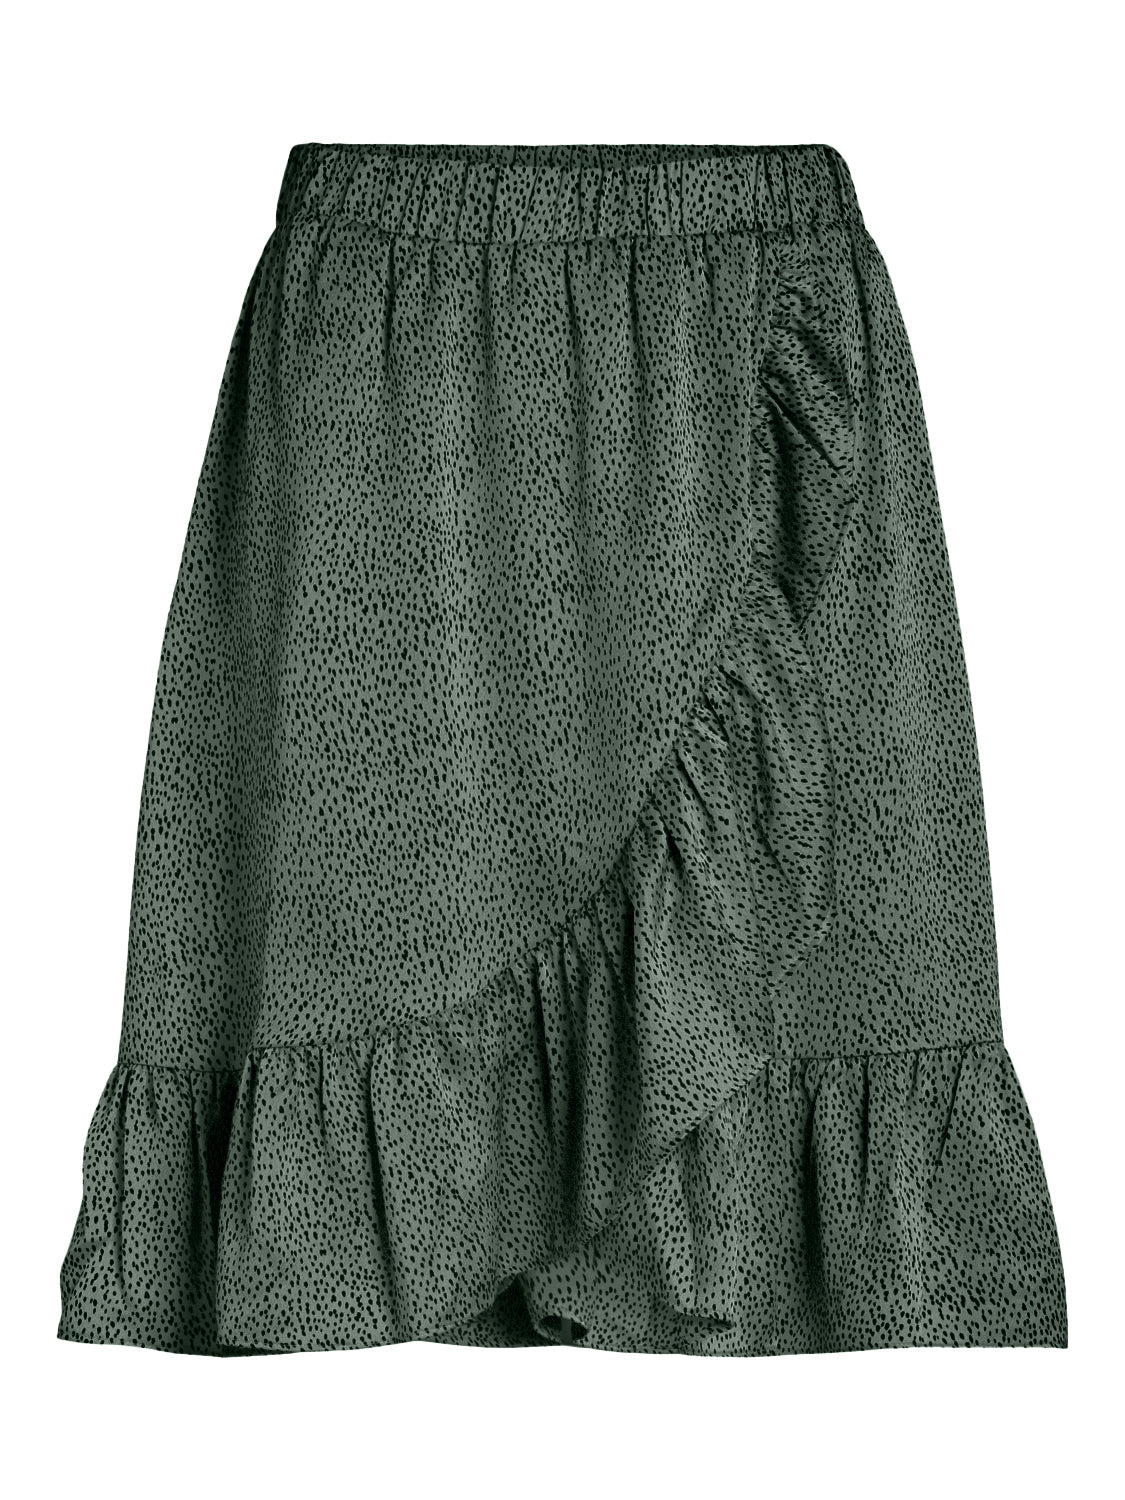 VIALMERIA Skirt - Laurel Wreath